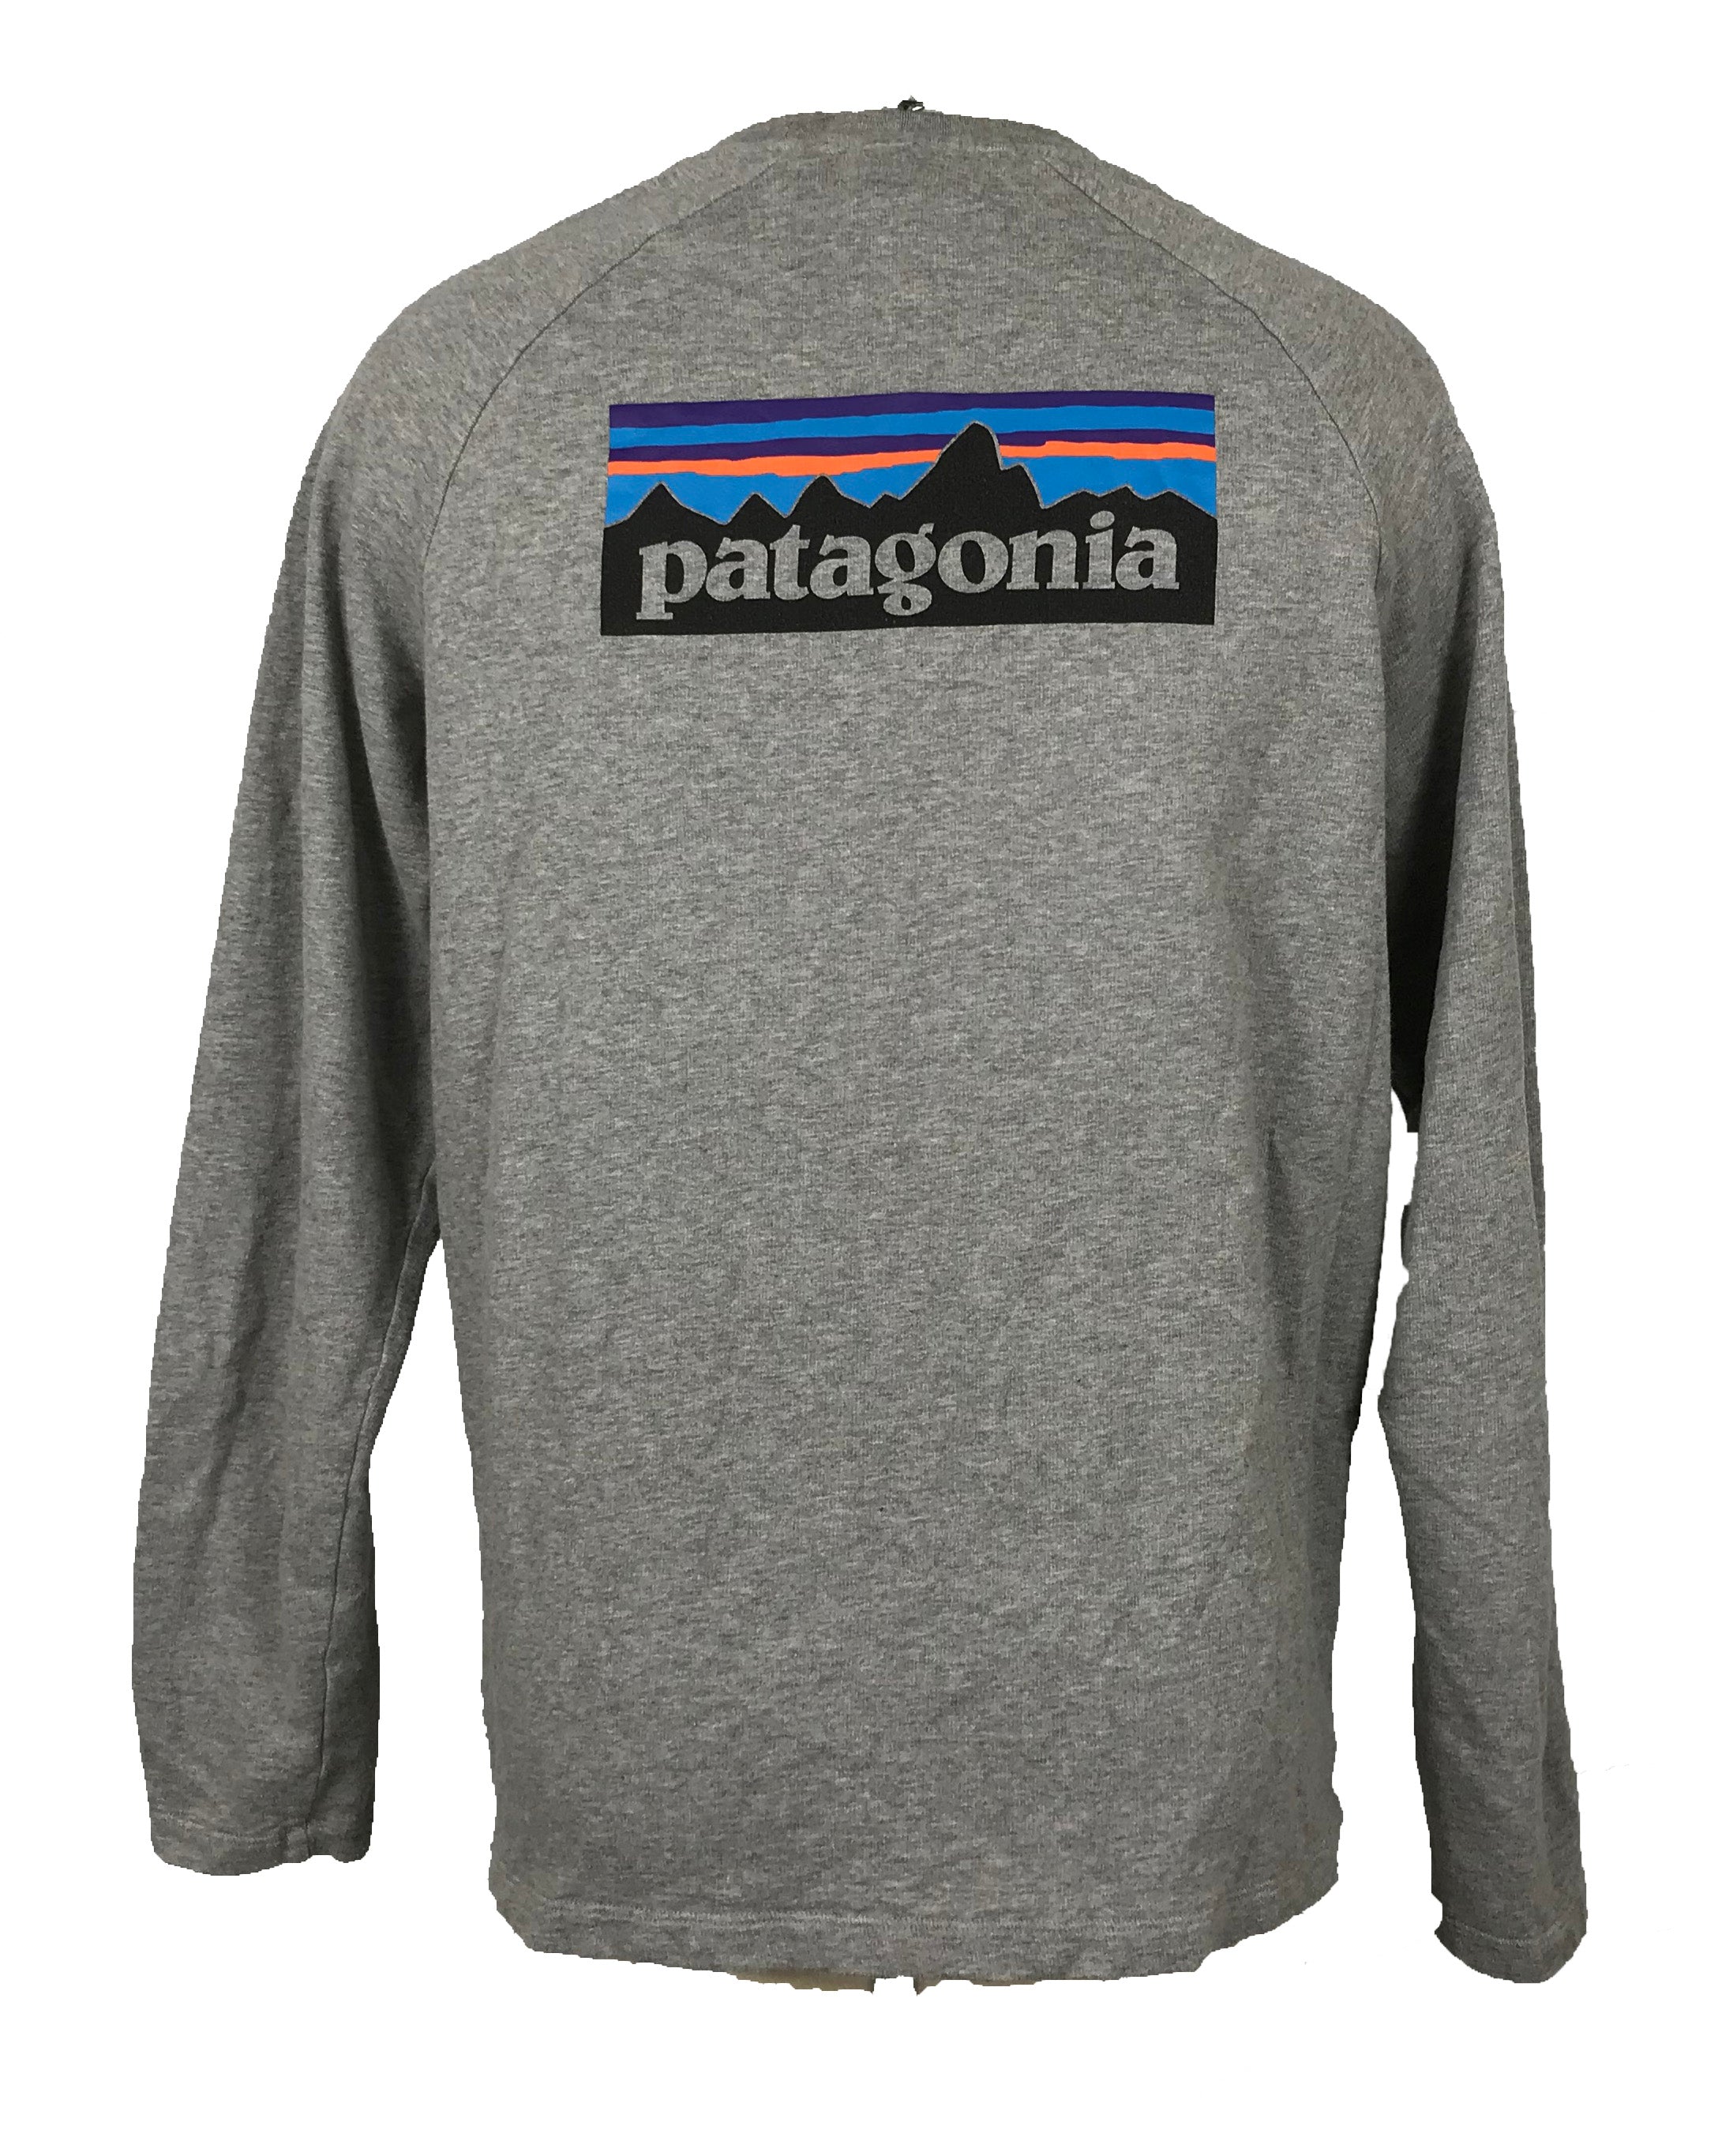 Patagonia Long Sleeve Shirt Men's Size L